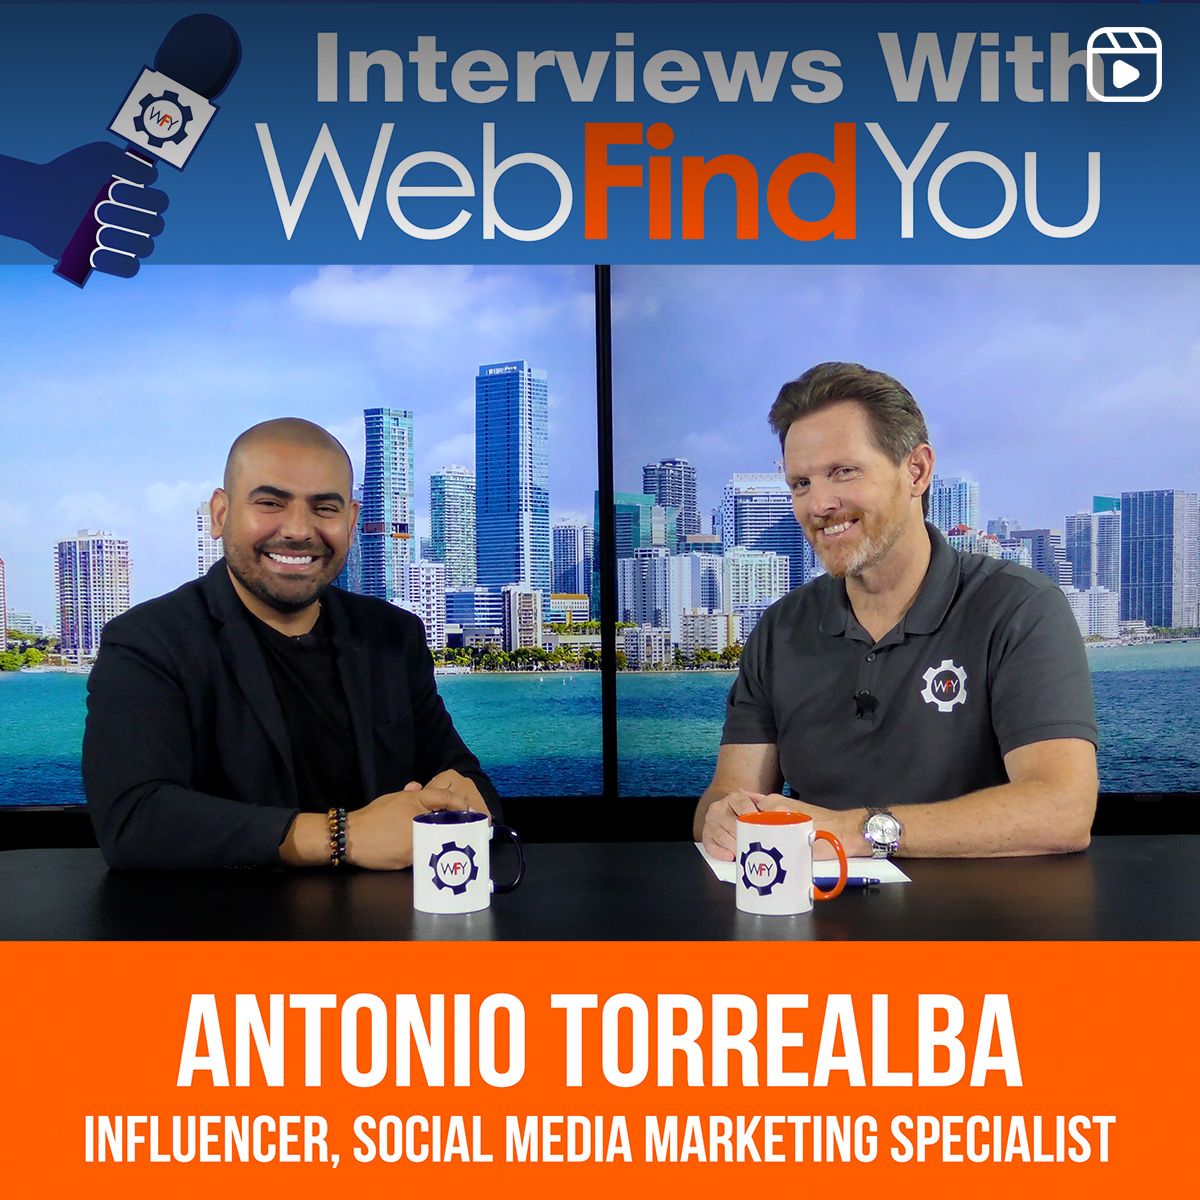 Antonio Torrealba's Interview